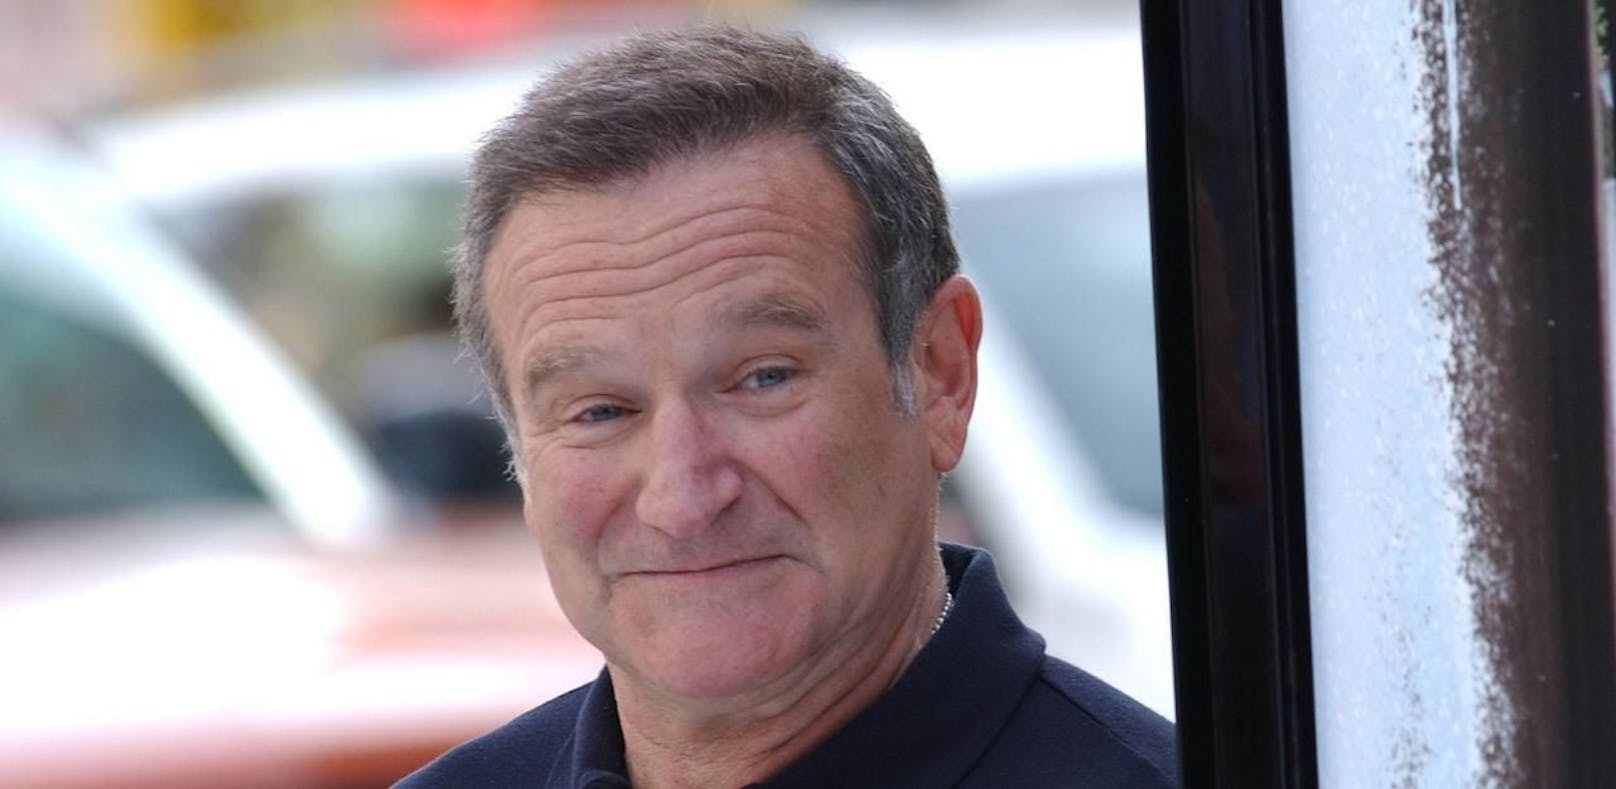 Robin Williams bekommt posthum YouTube-Kanal